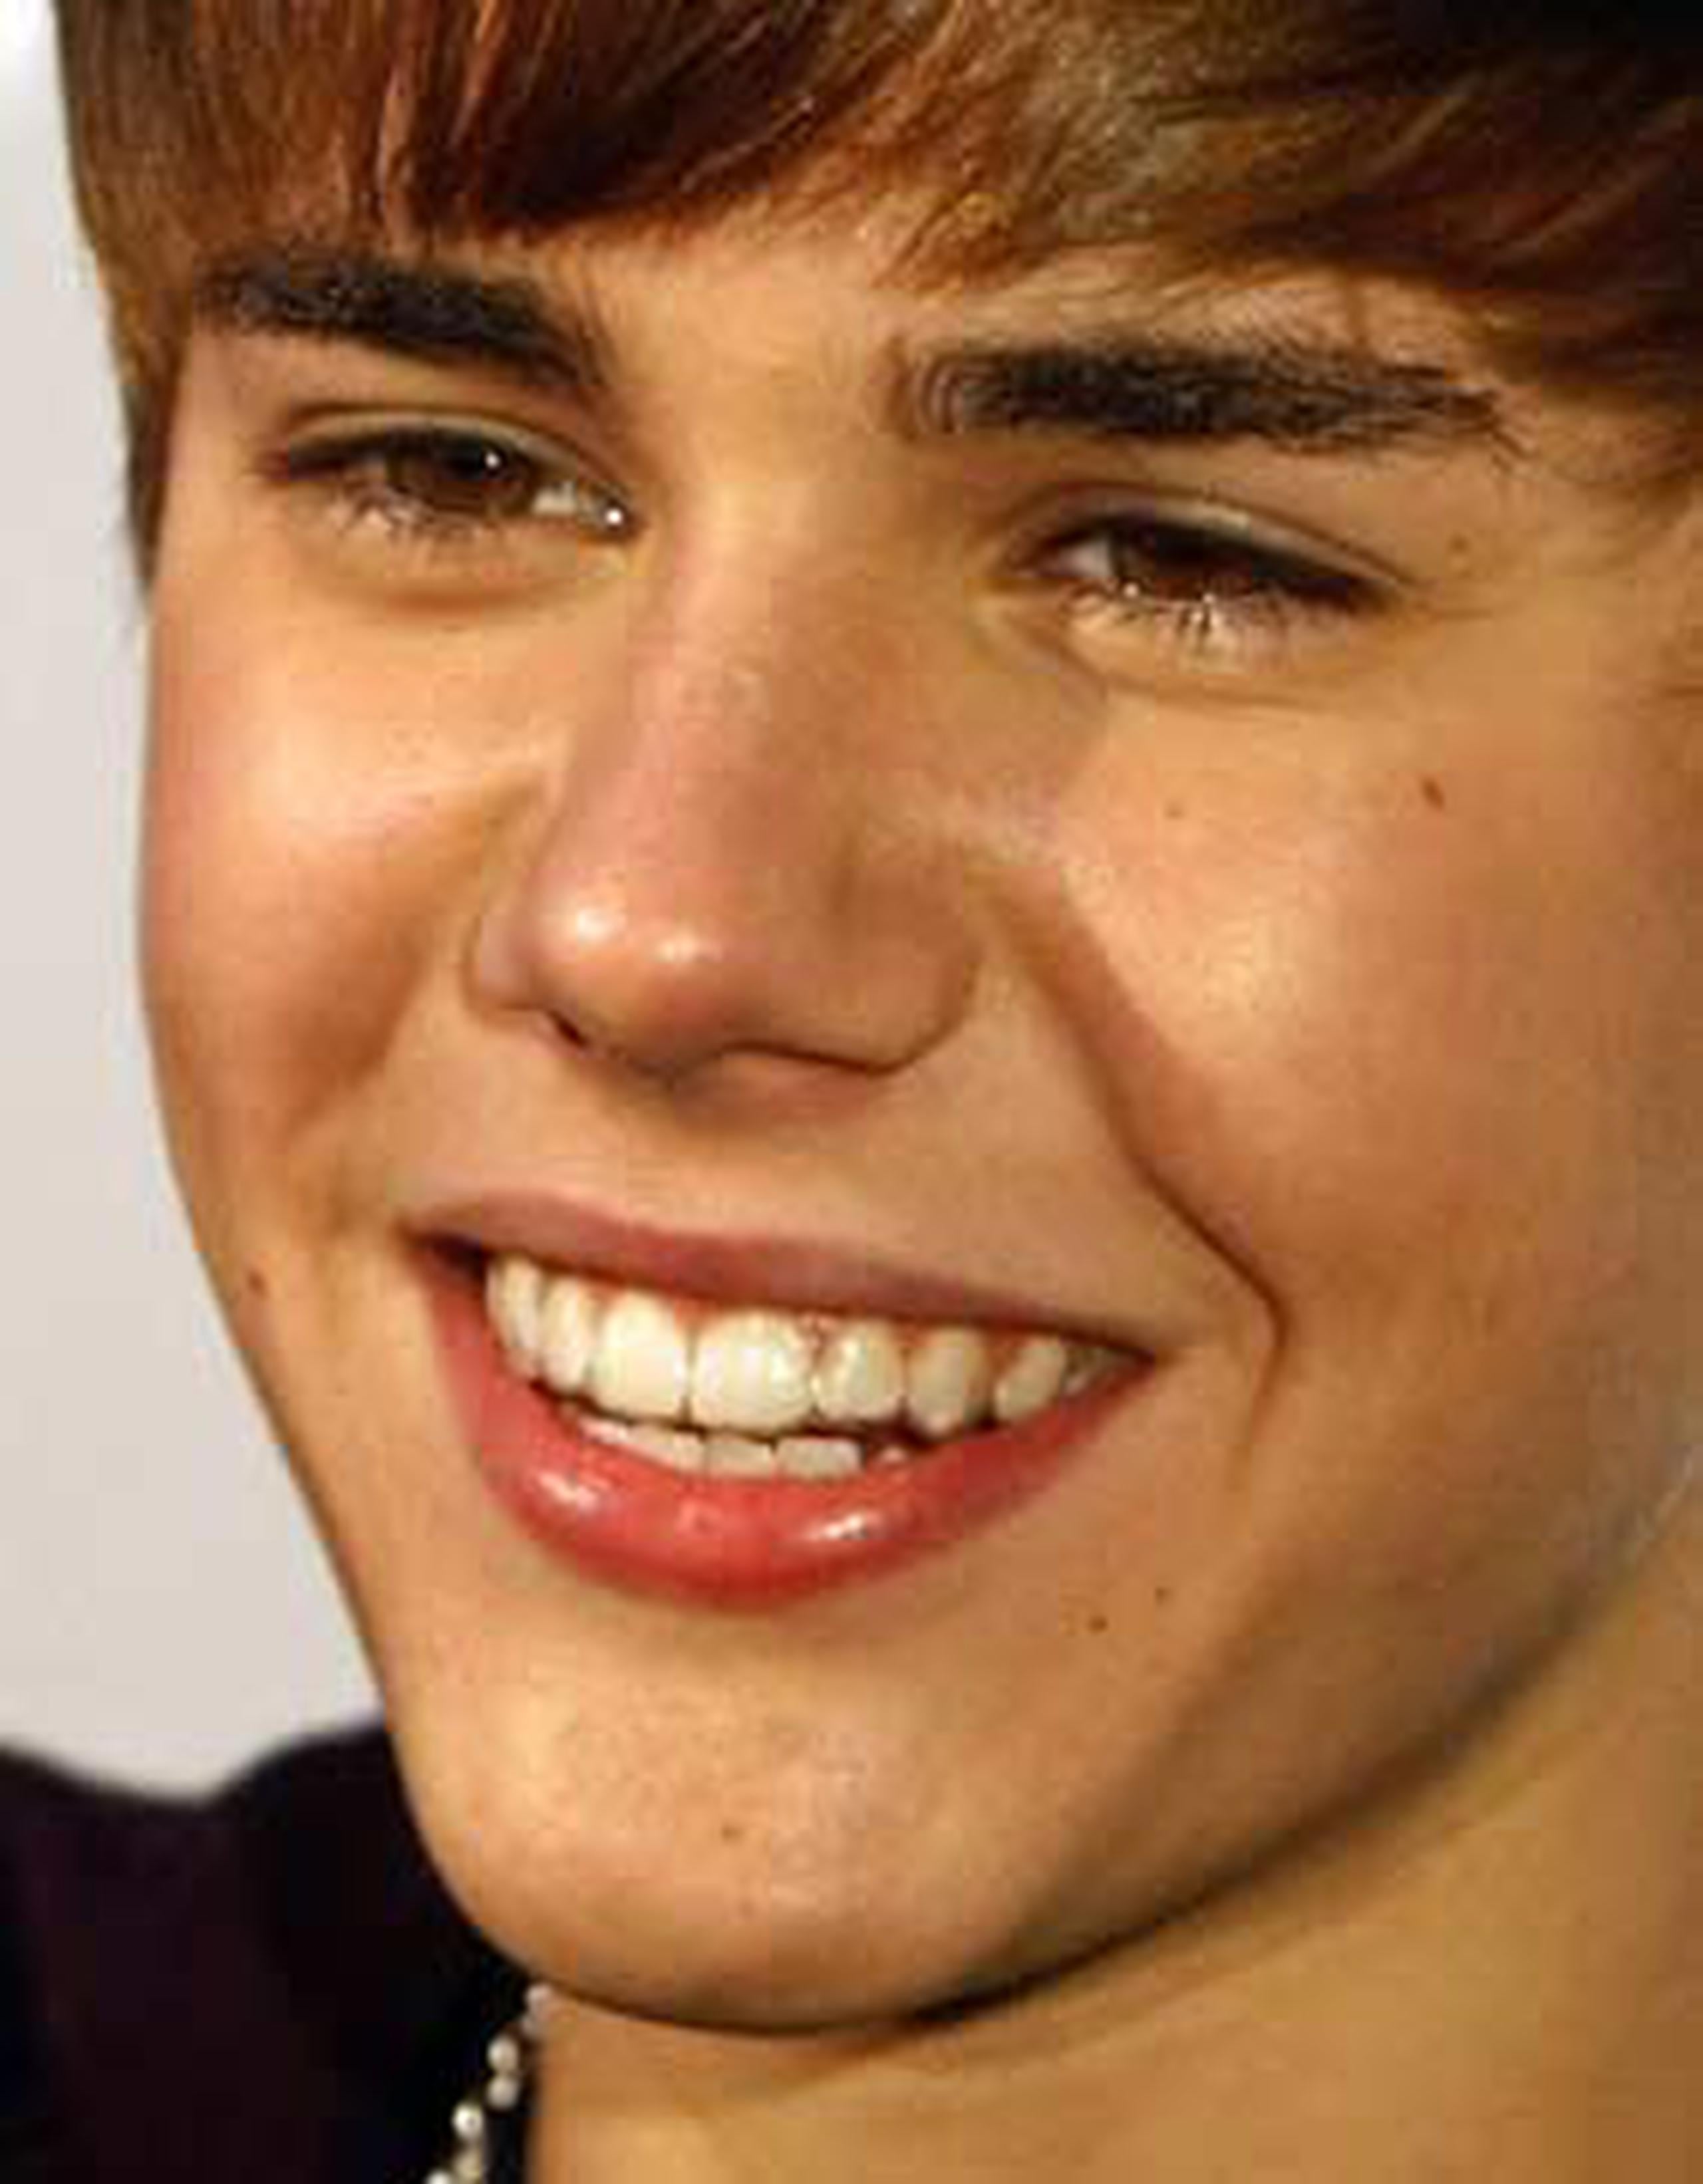 Justin Bieber no estaba en el Ferrari cuando ocurrió el incidente en el que murió un fotógrafo.